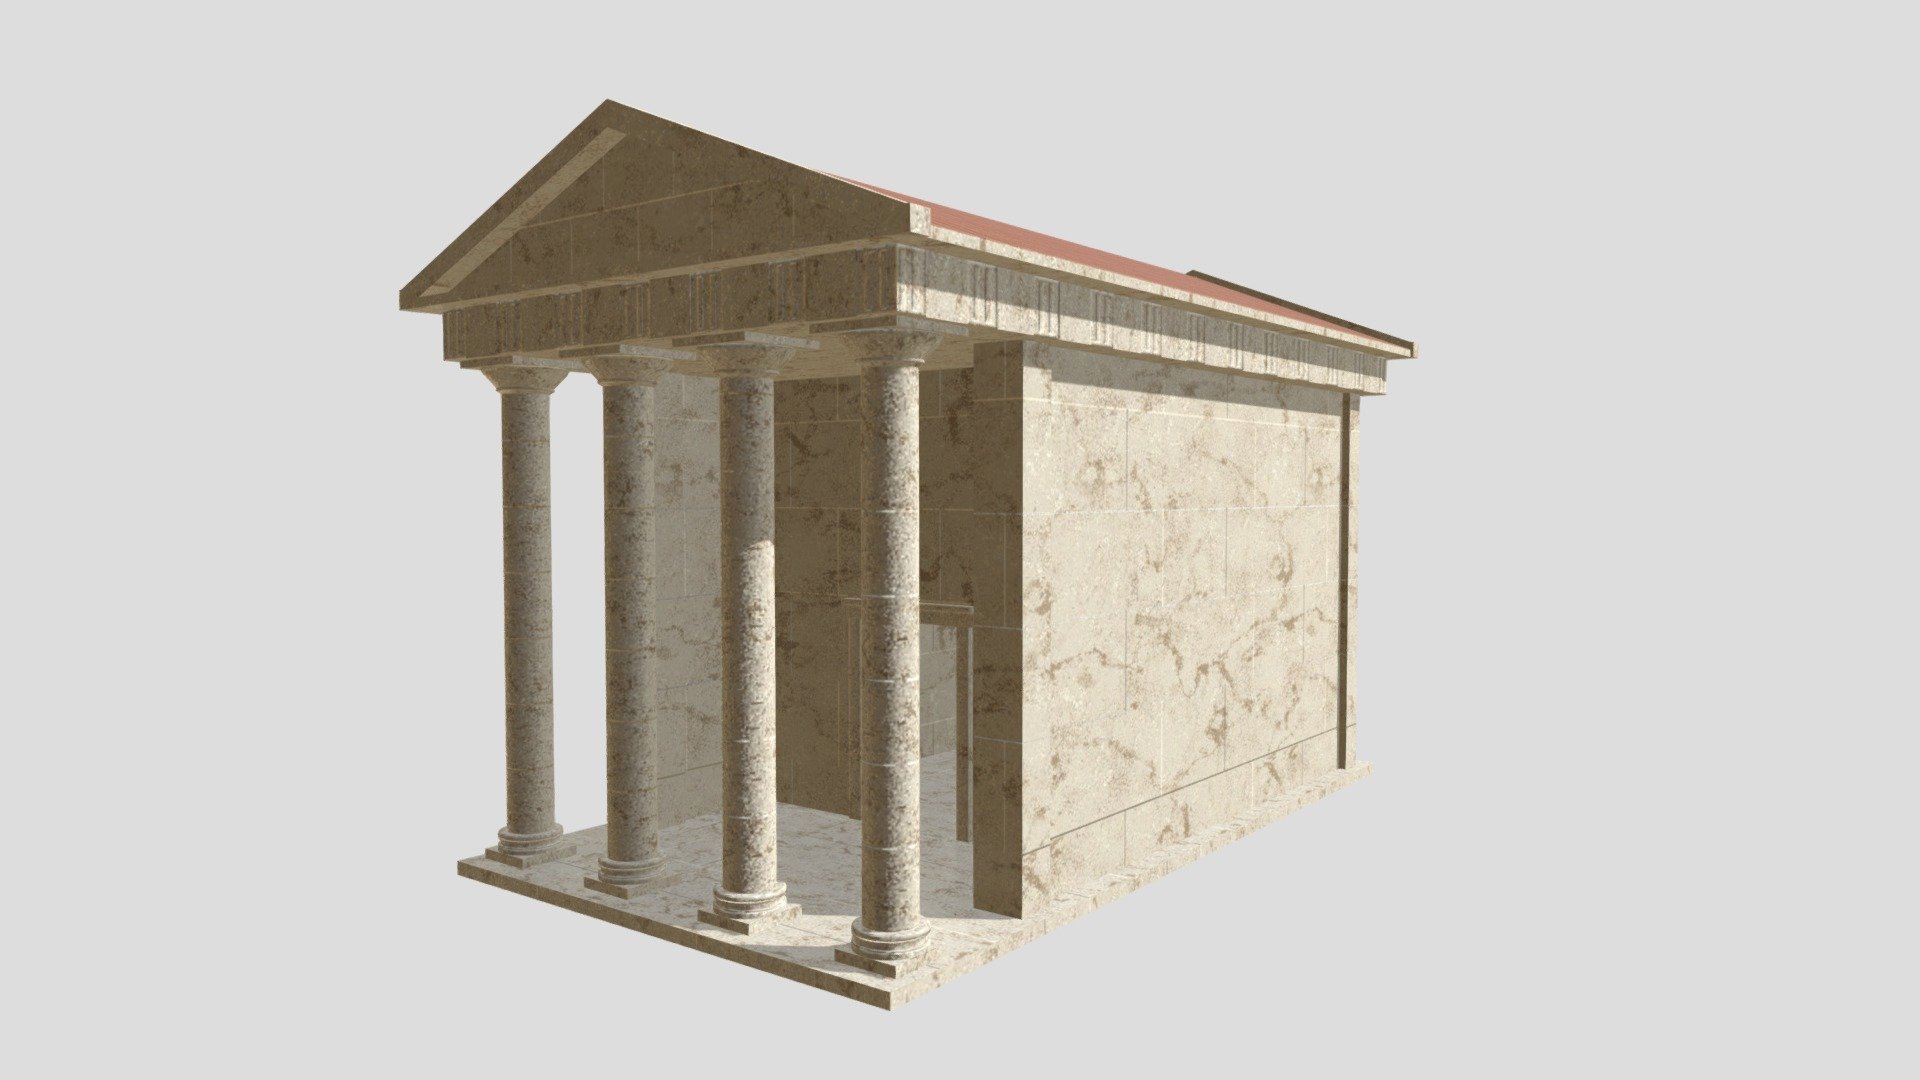 Greek Little Temple
Low Poly - Greek Little Temple_Low Poly (version 1) - 3D model by Guillaume C 3D (@Guillaume_C_3D) 3d model